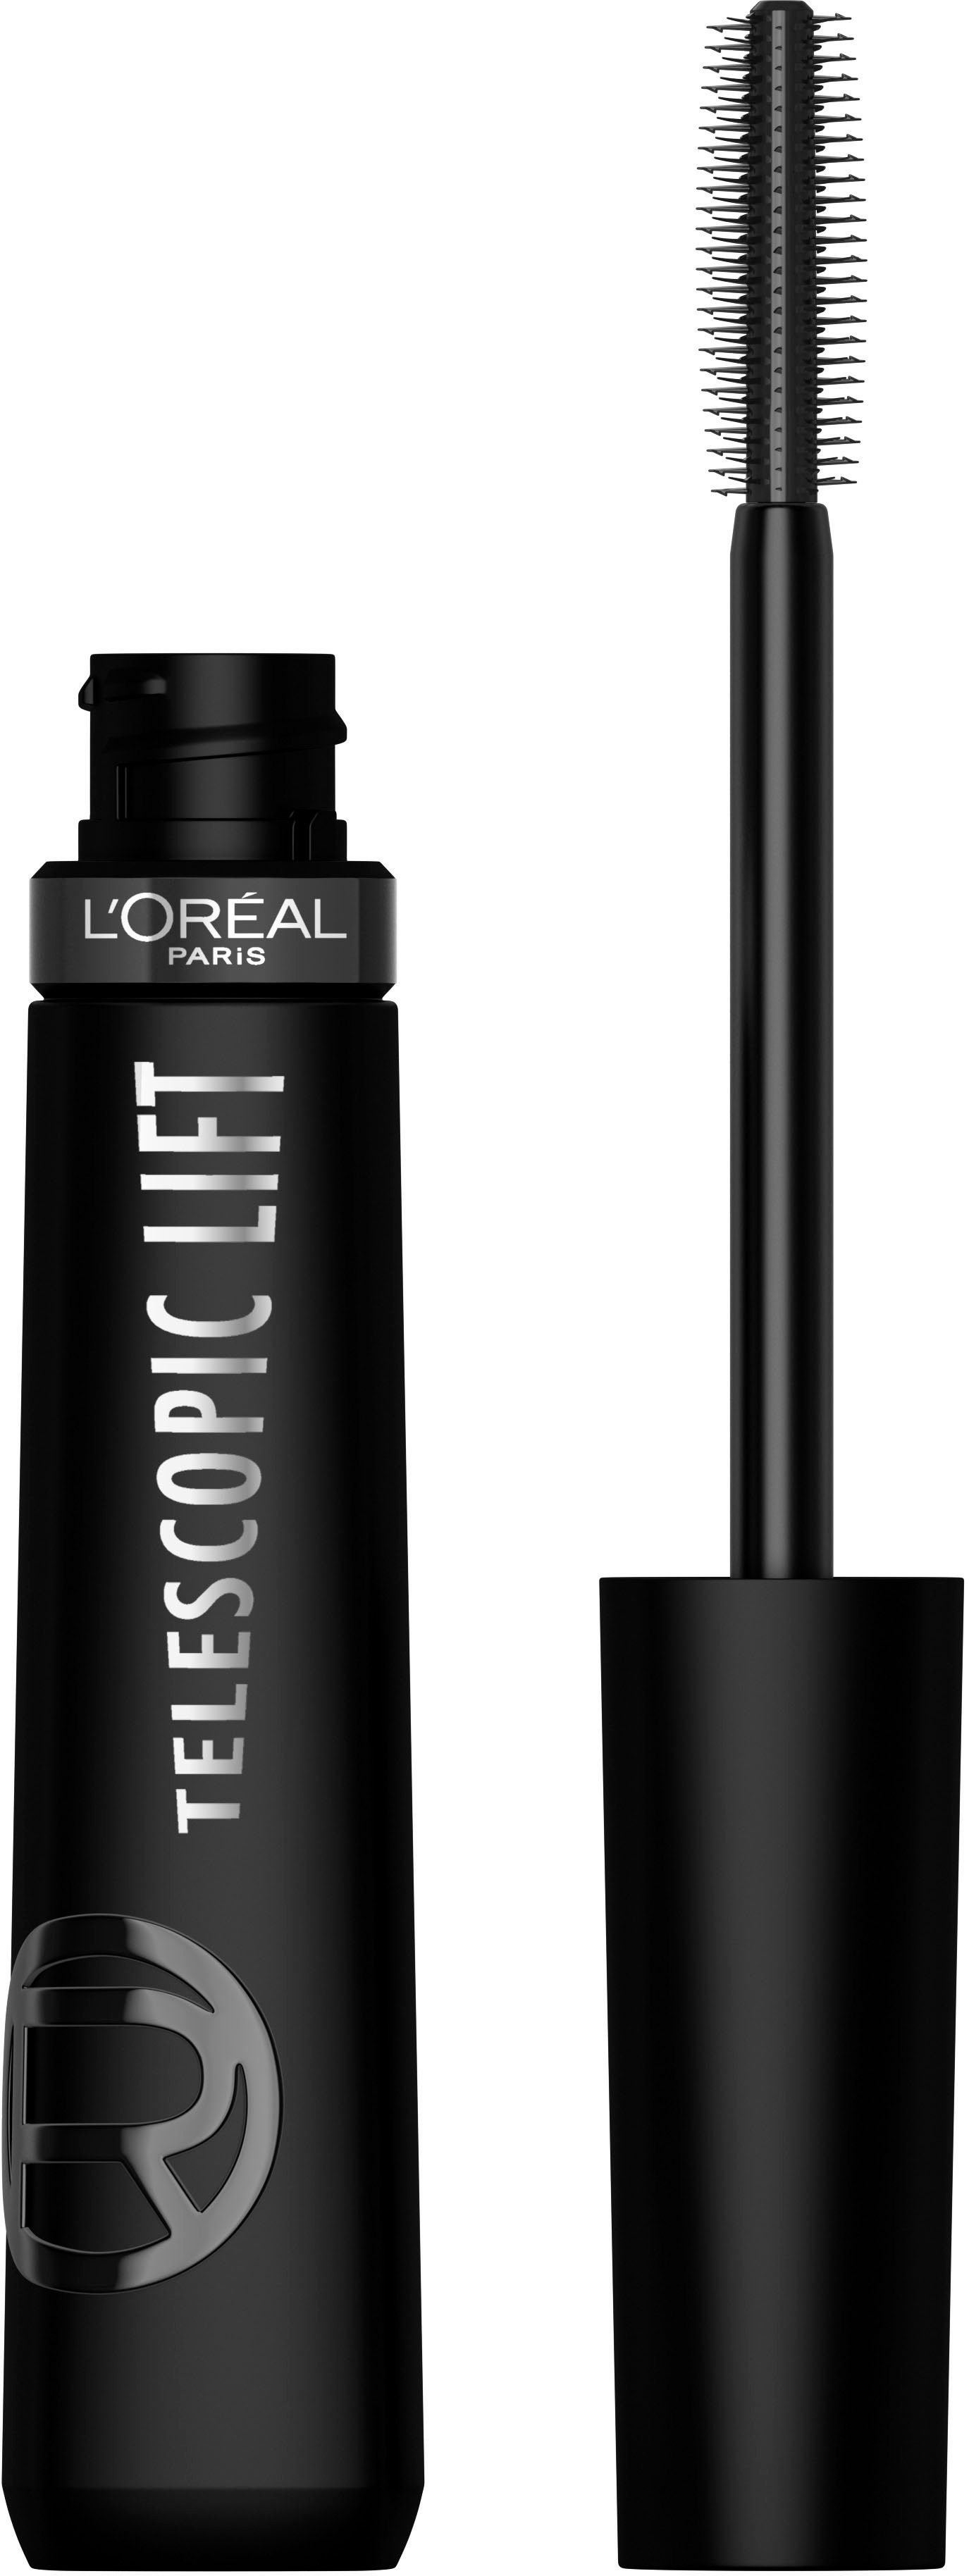 Extra Lifting-Effekt Telescopic Wimperntusche L'Oréal PARIS mit Paris Lift Mascara Mascara, Black L'ORÉAL